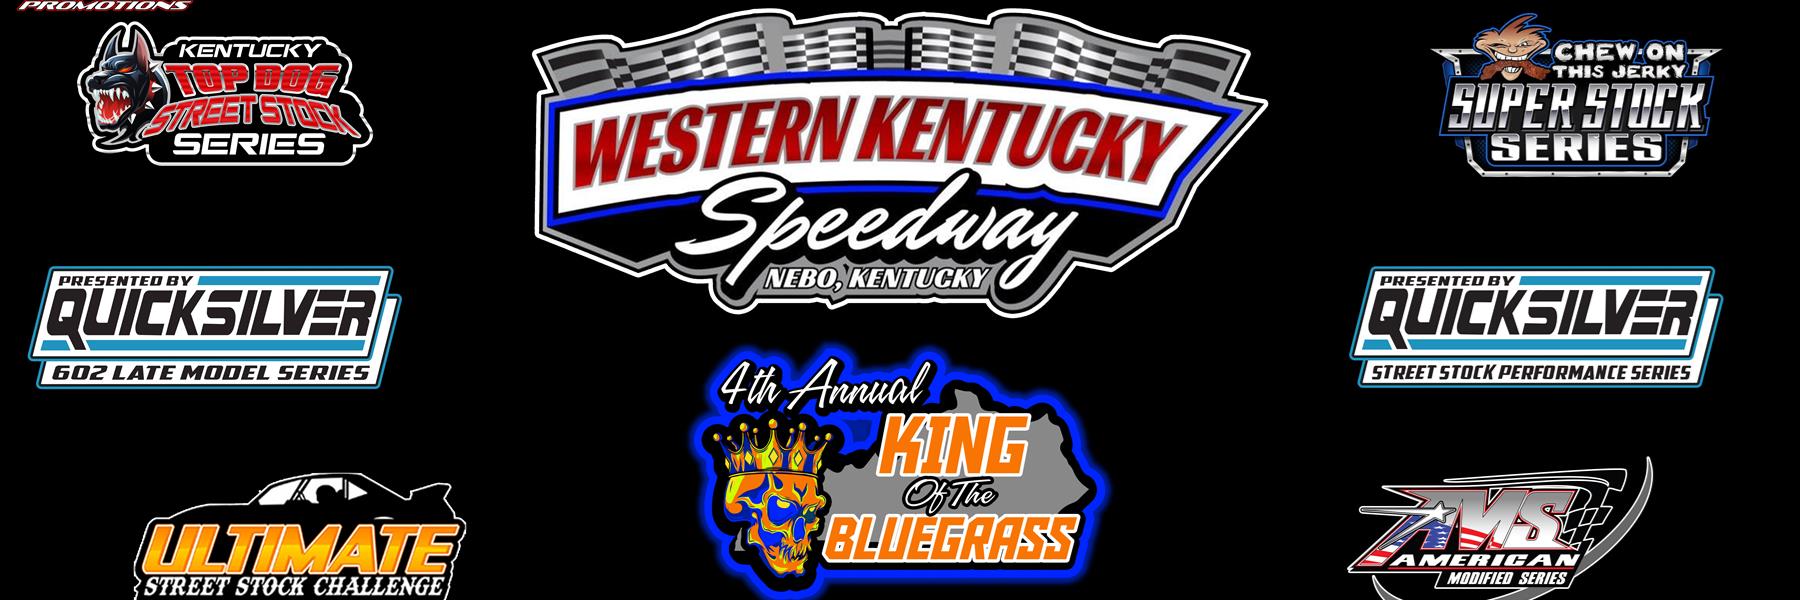 7/2/2022 - Western Kentucky Speedway